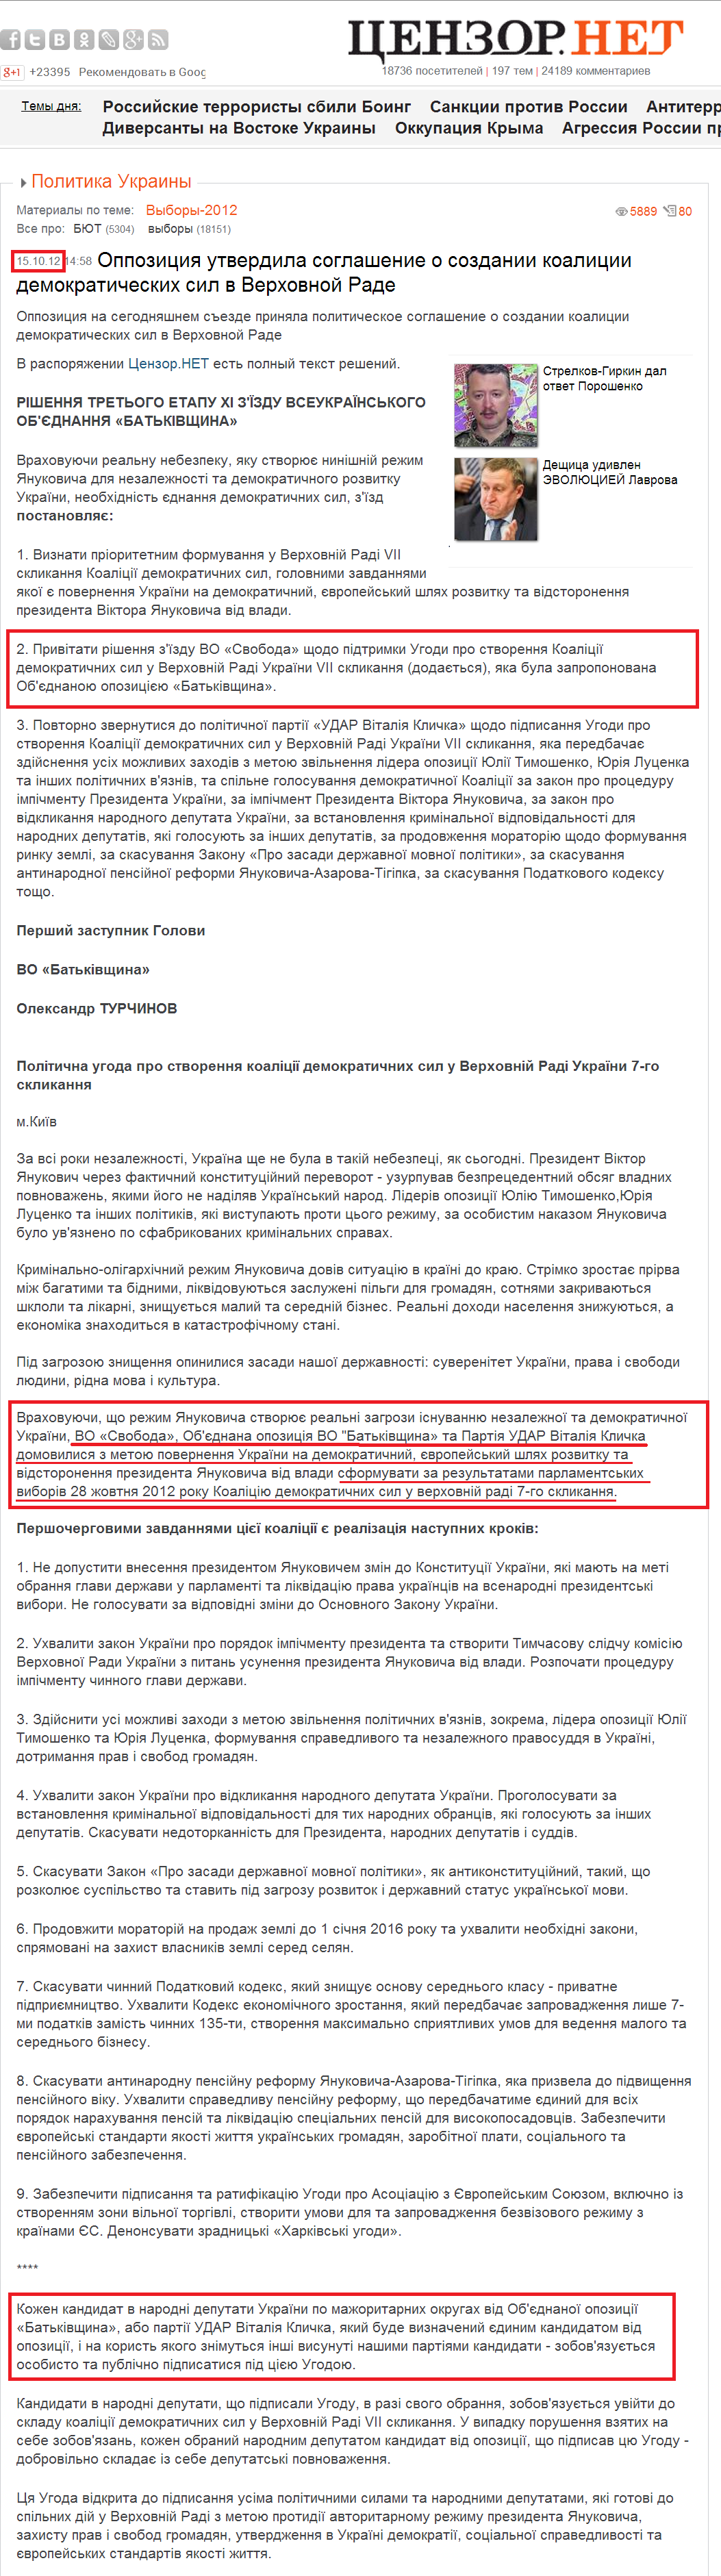 http://censor.net.ua/news/220491/oppozitsiya_utverdila_soglashenie_o_sozdanii_koalitsii_demokraticheskih_sil_v_verhovnoyi_rade